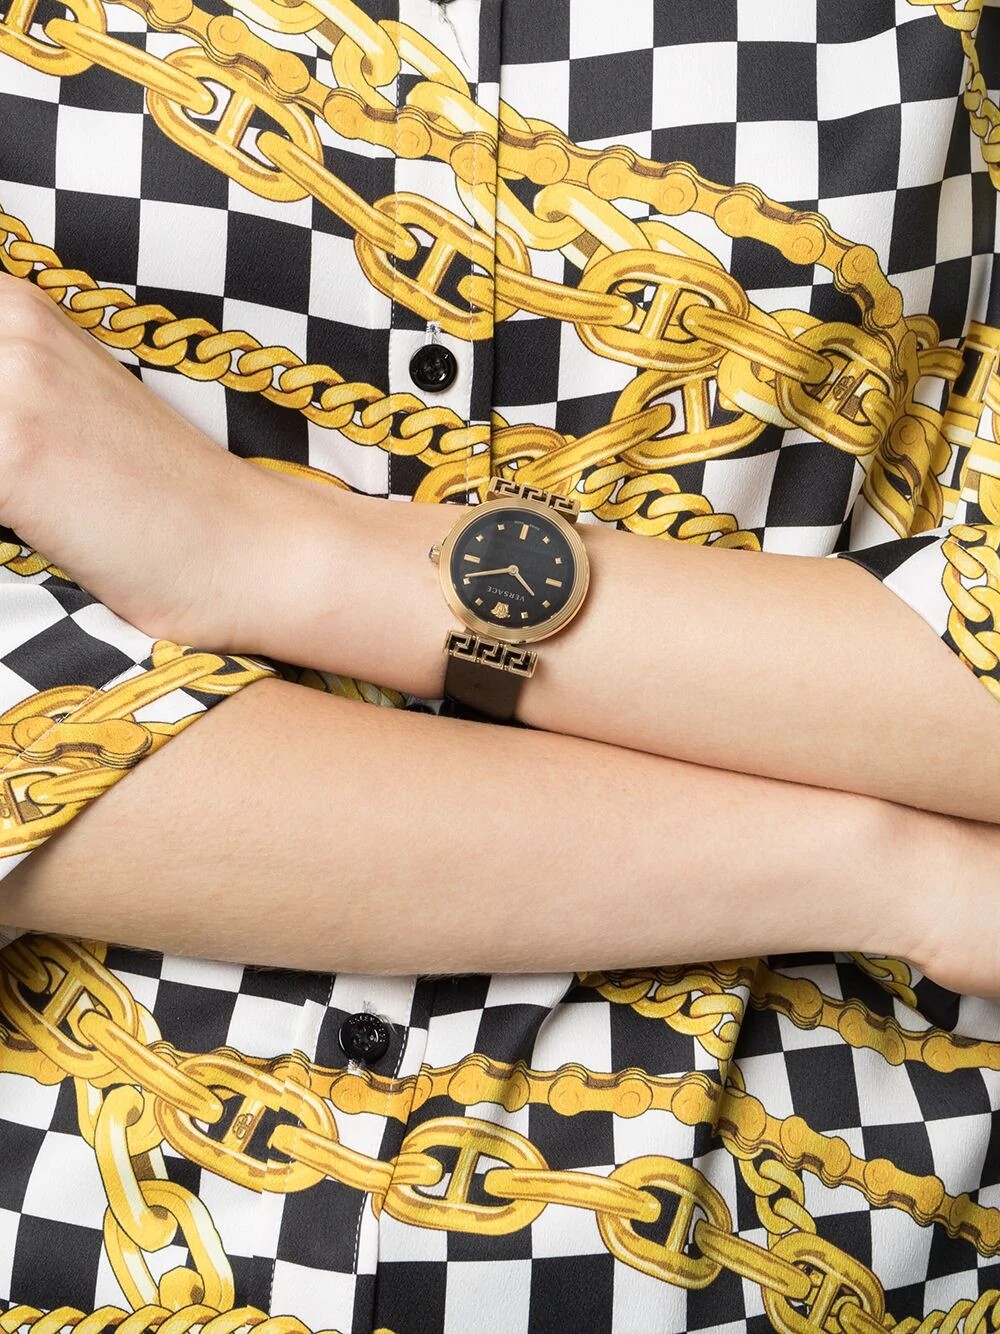 15款時裝品牌腕錶精選丨Gucci、Hermès、LV及Fendi腕錶是手袋以外最值得投資的